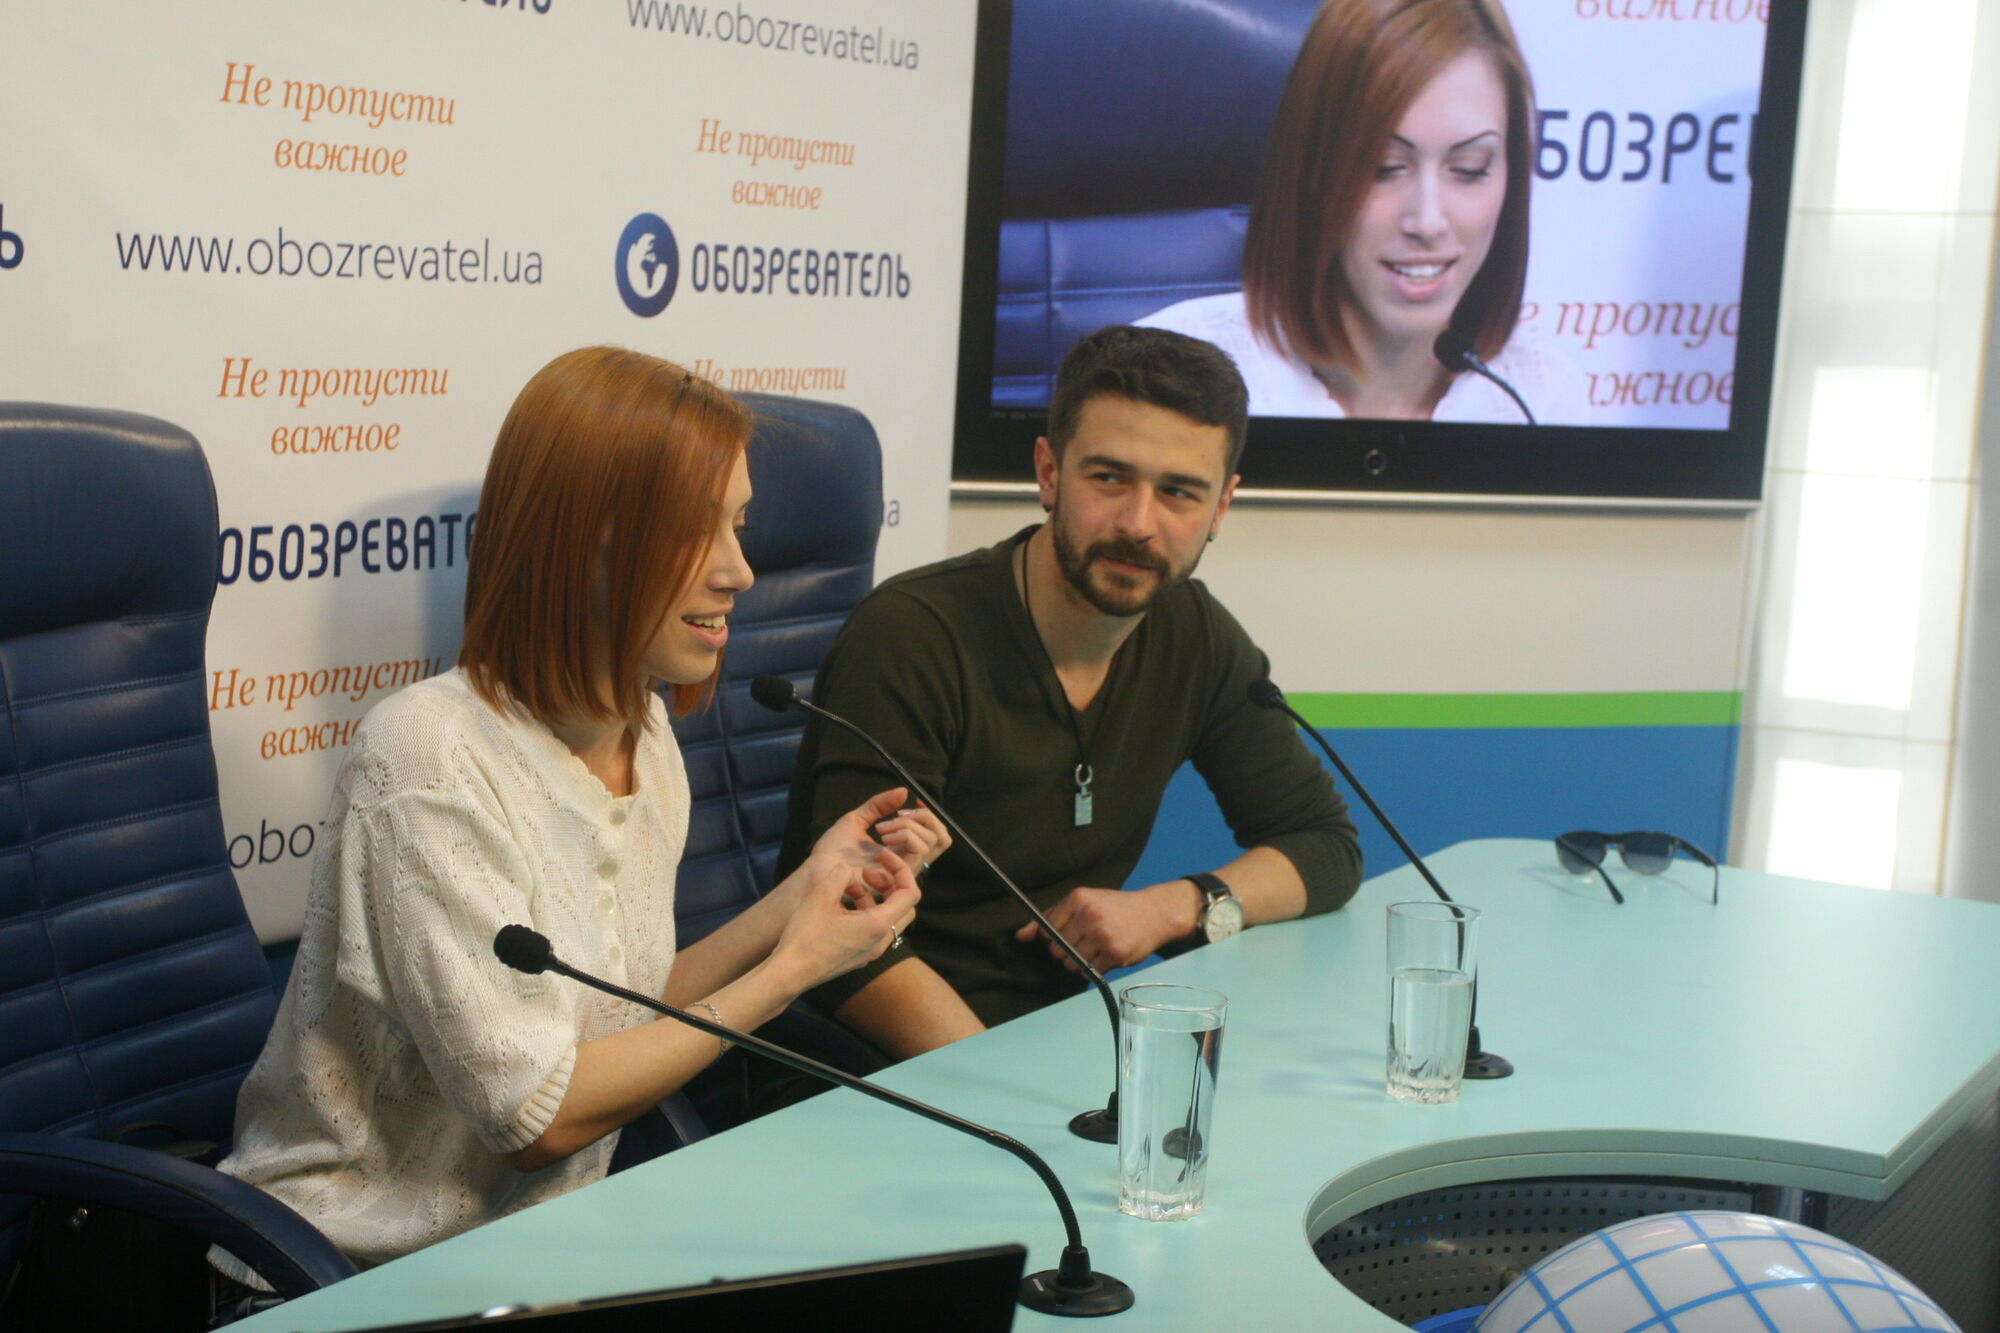 Молдова на Евровидении 2013 в гостях у Обозревателя